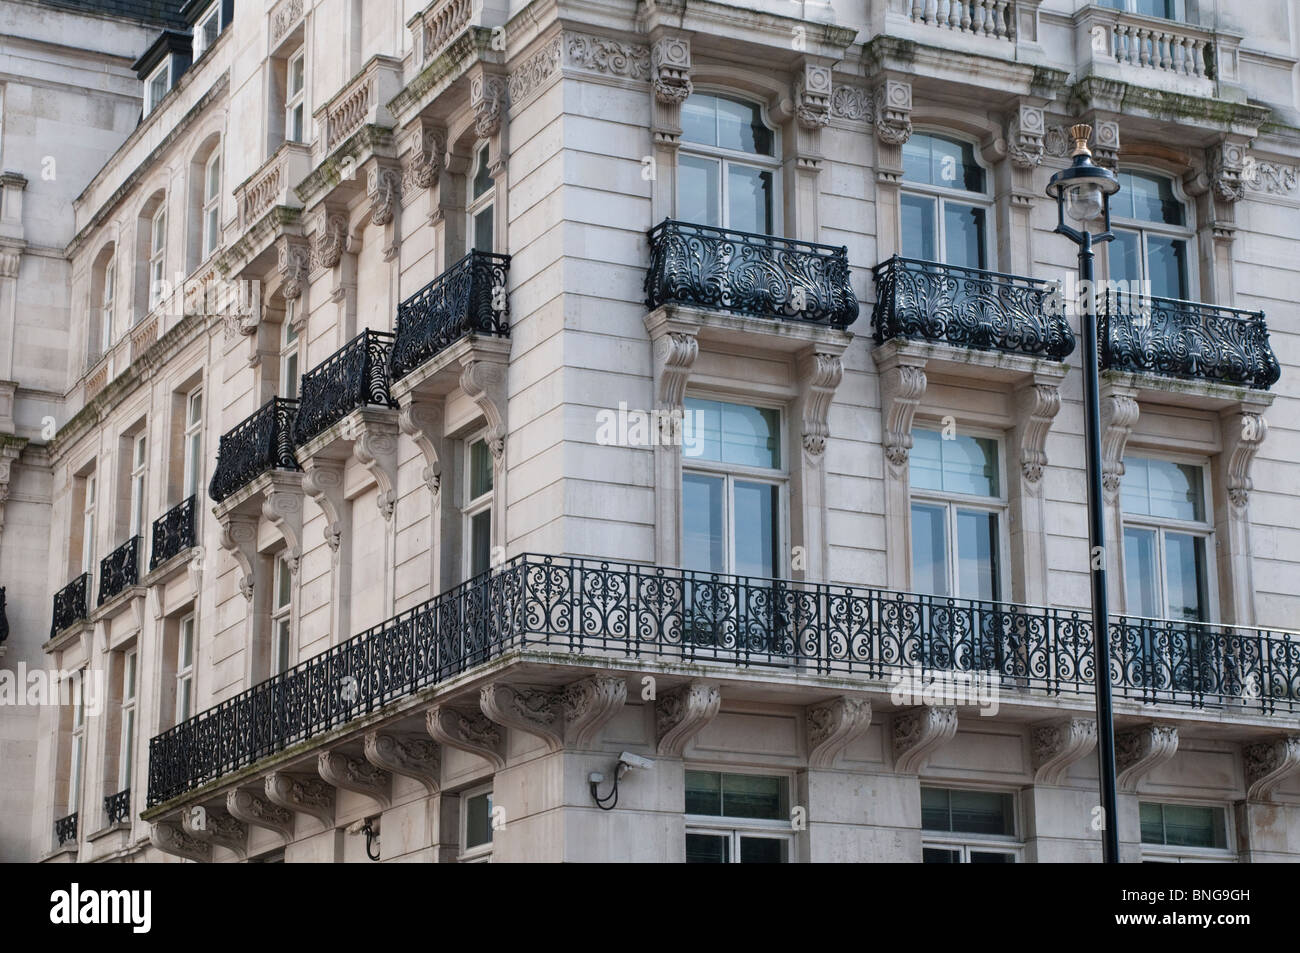 Corner house on Buckingham Palace Road with cast iron balconies, London, UK Stock Photo